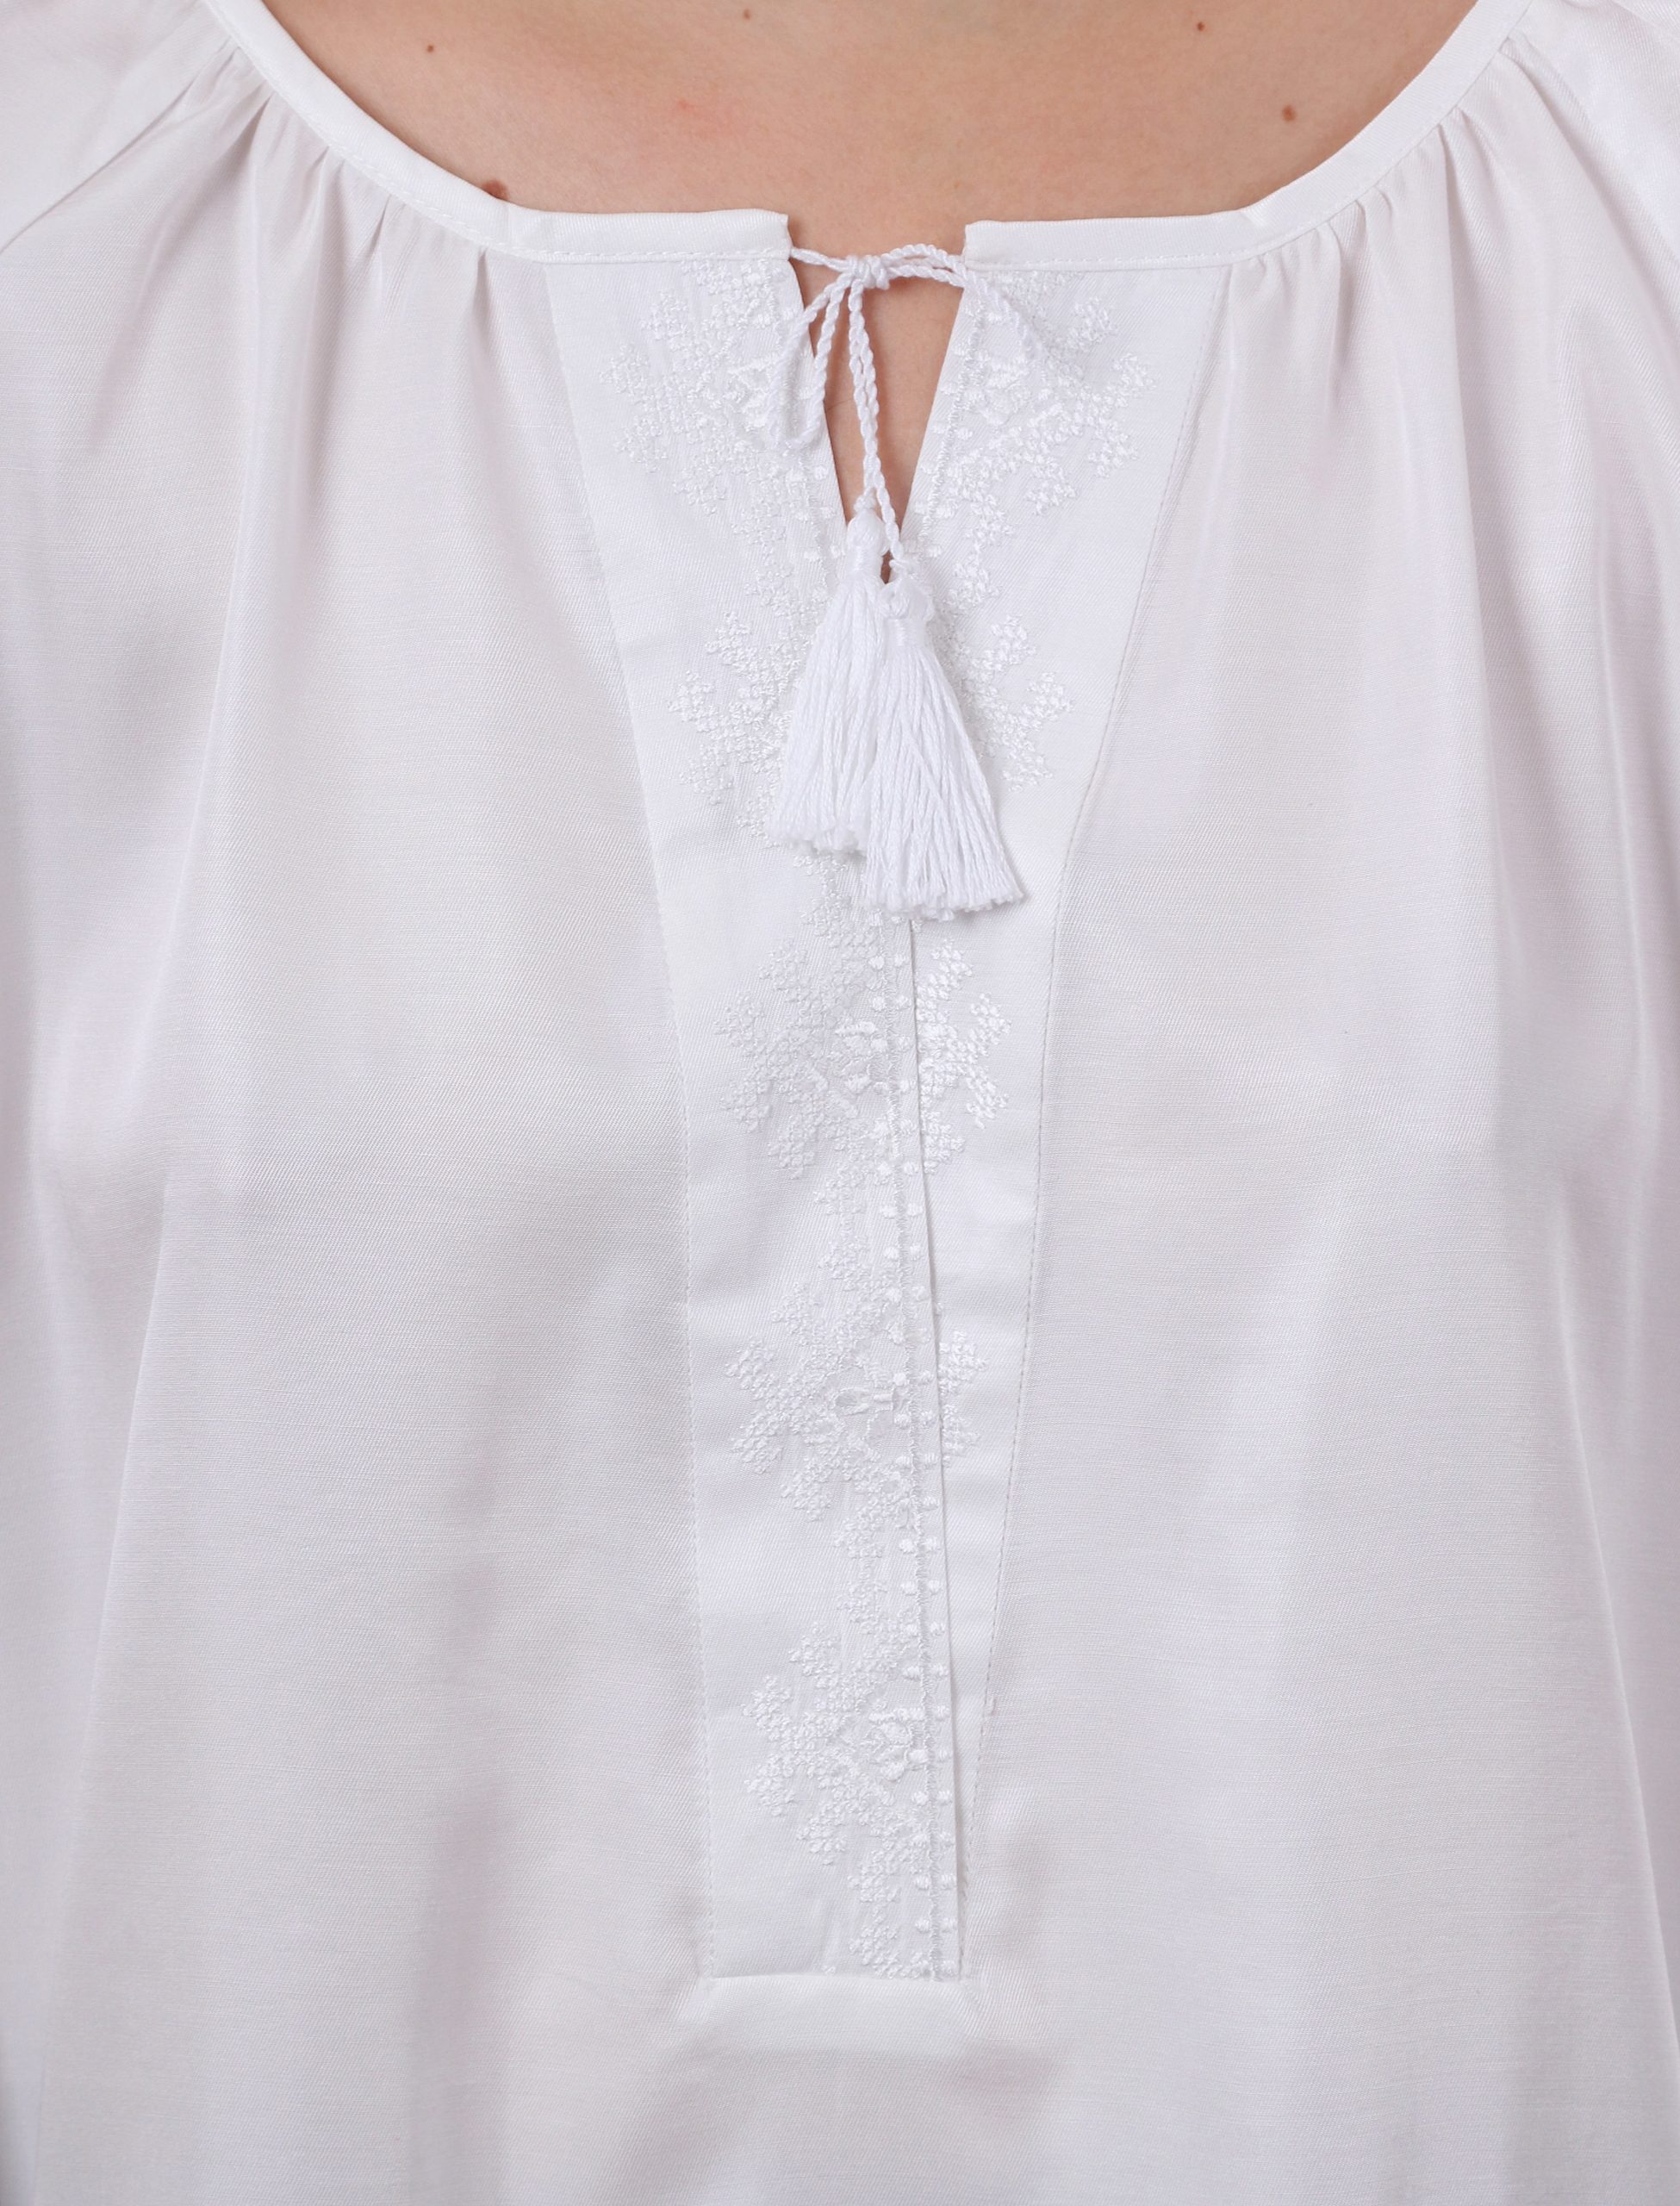 Блуза с вышивкой «Розы любви» (белая)